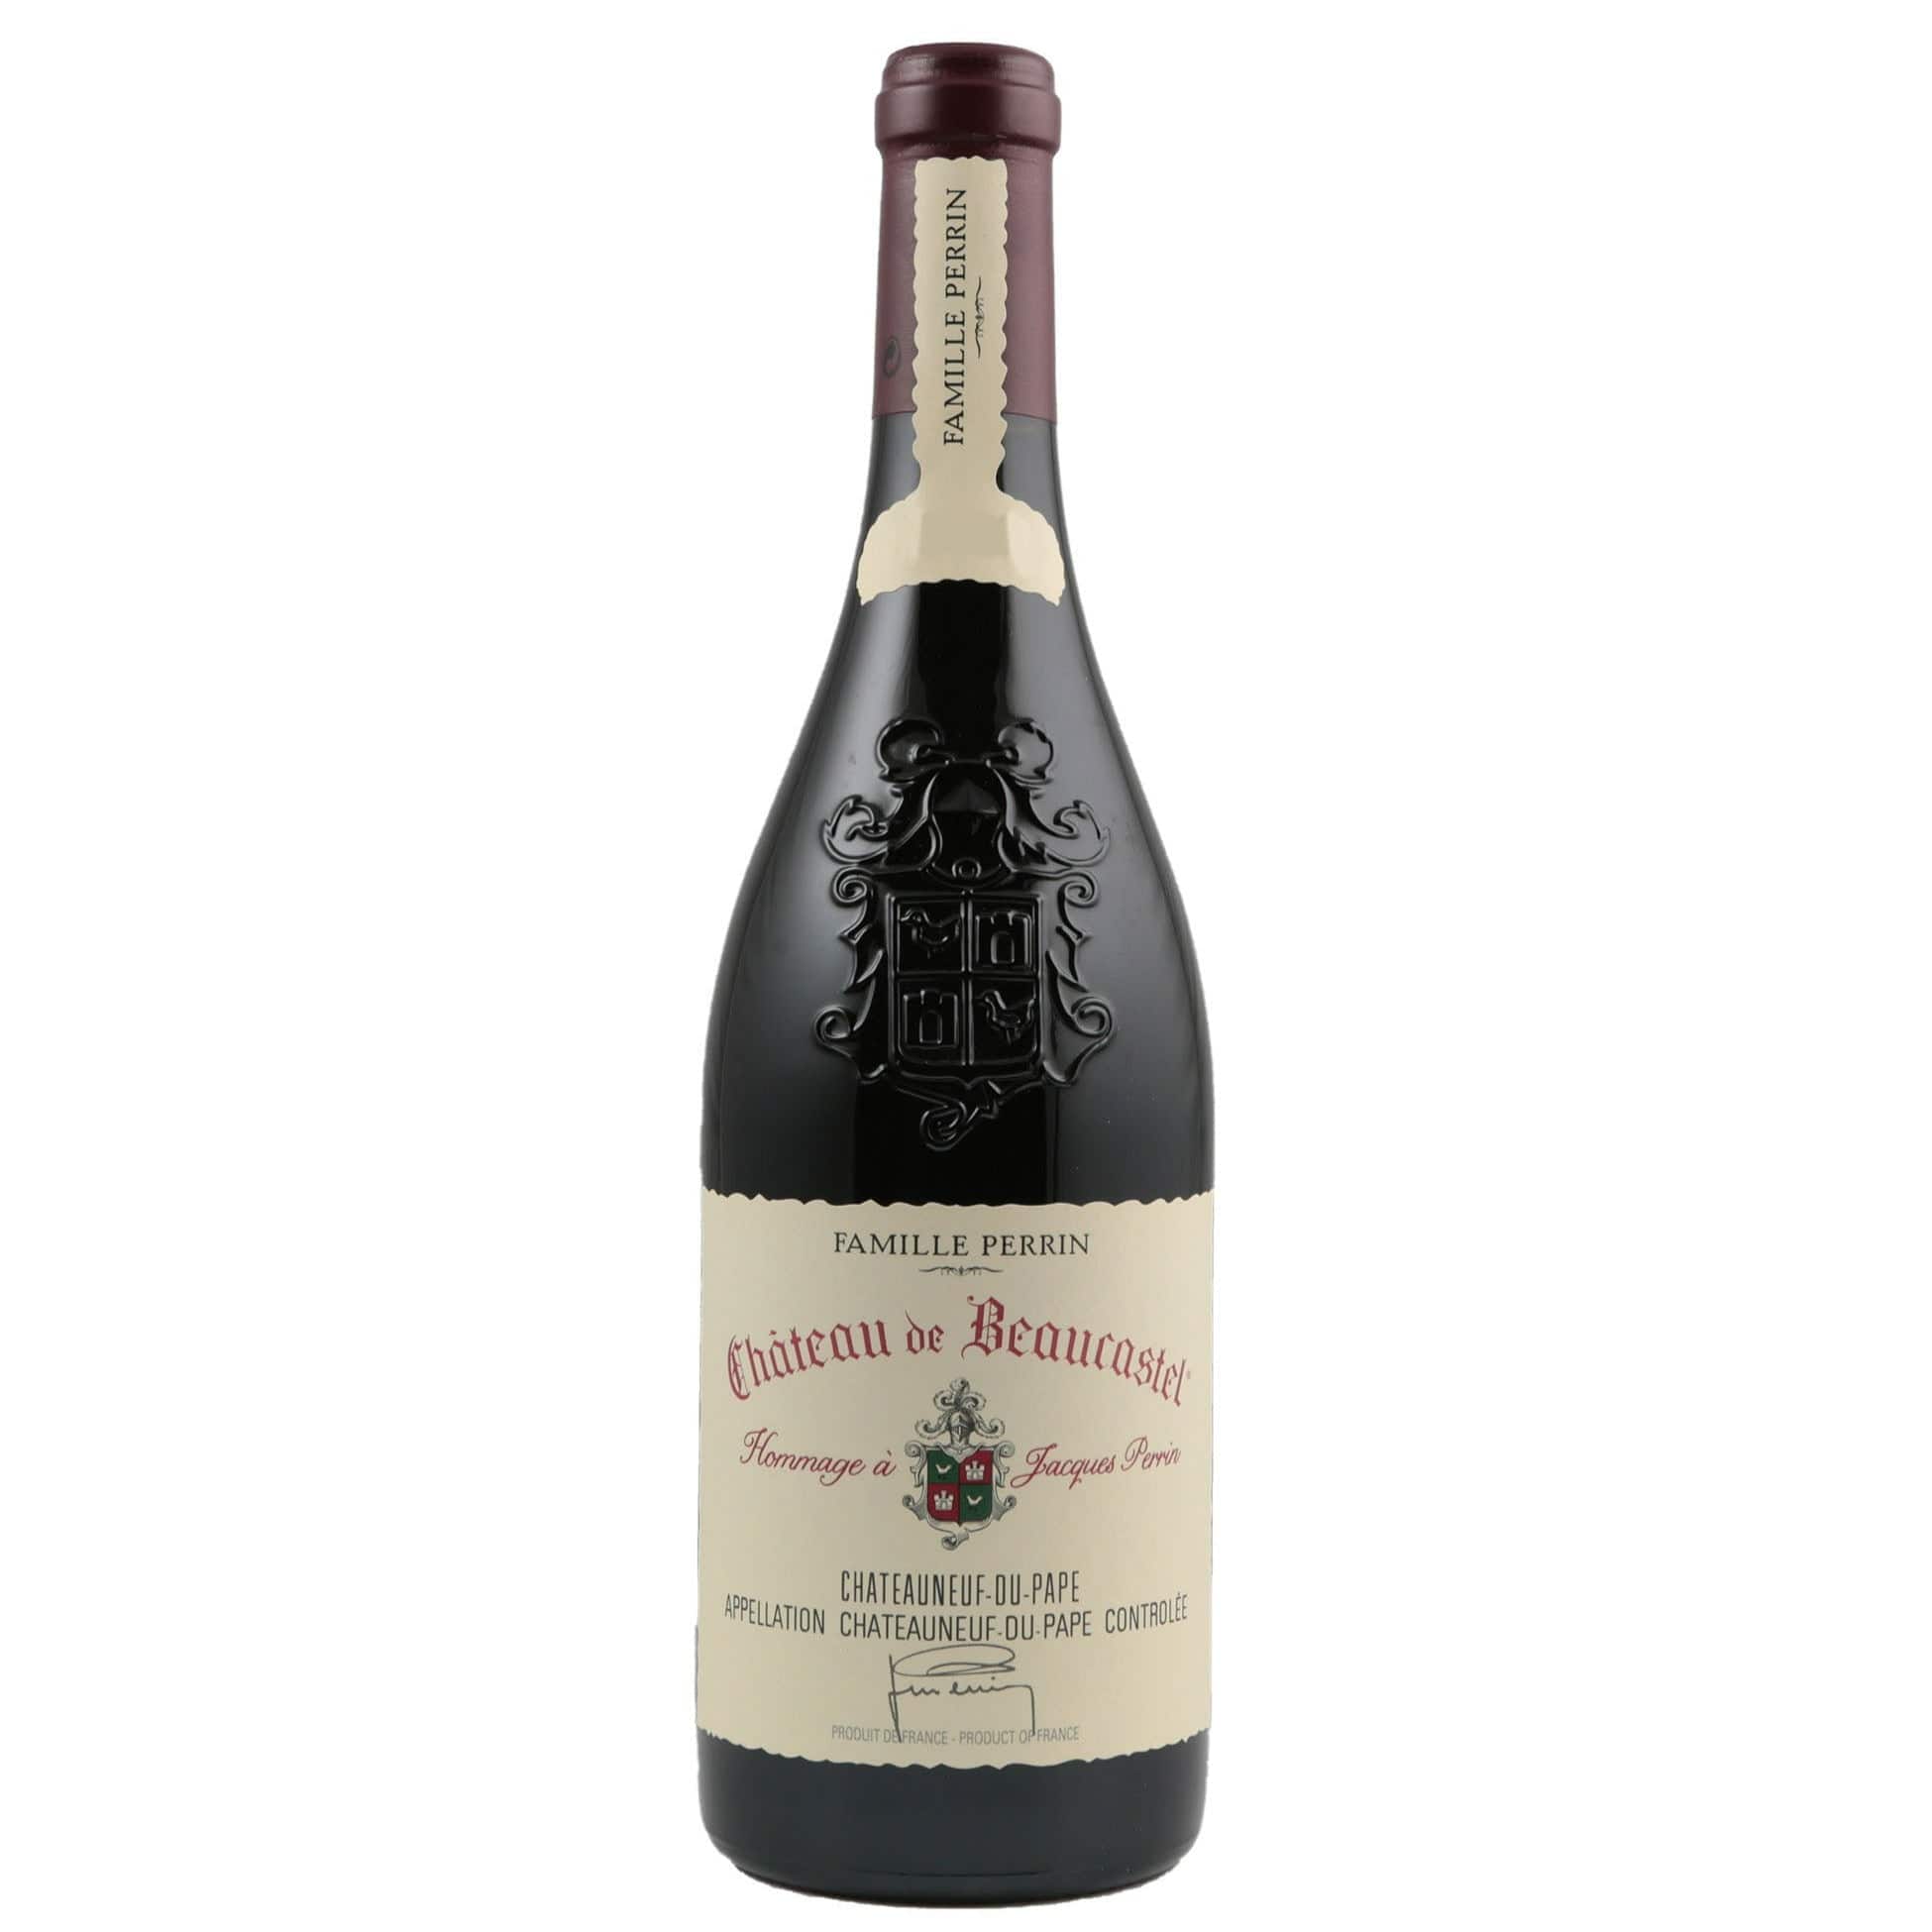 Single bottle of Red wine Chateau de Beaucastel, Chateauneuf du Pape, 1995 Grenache, Mourvedre, Syrah, Counoise & Cinsault